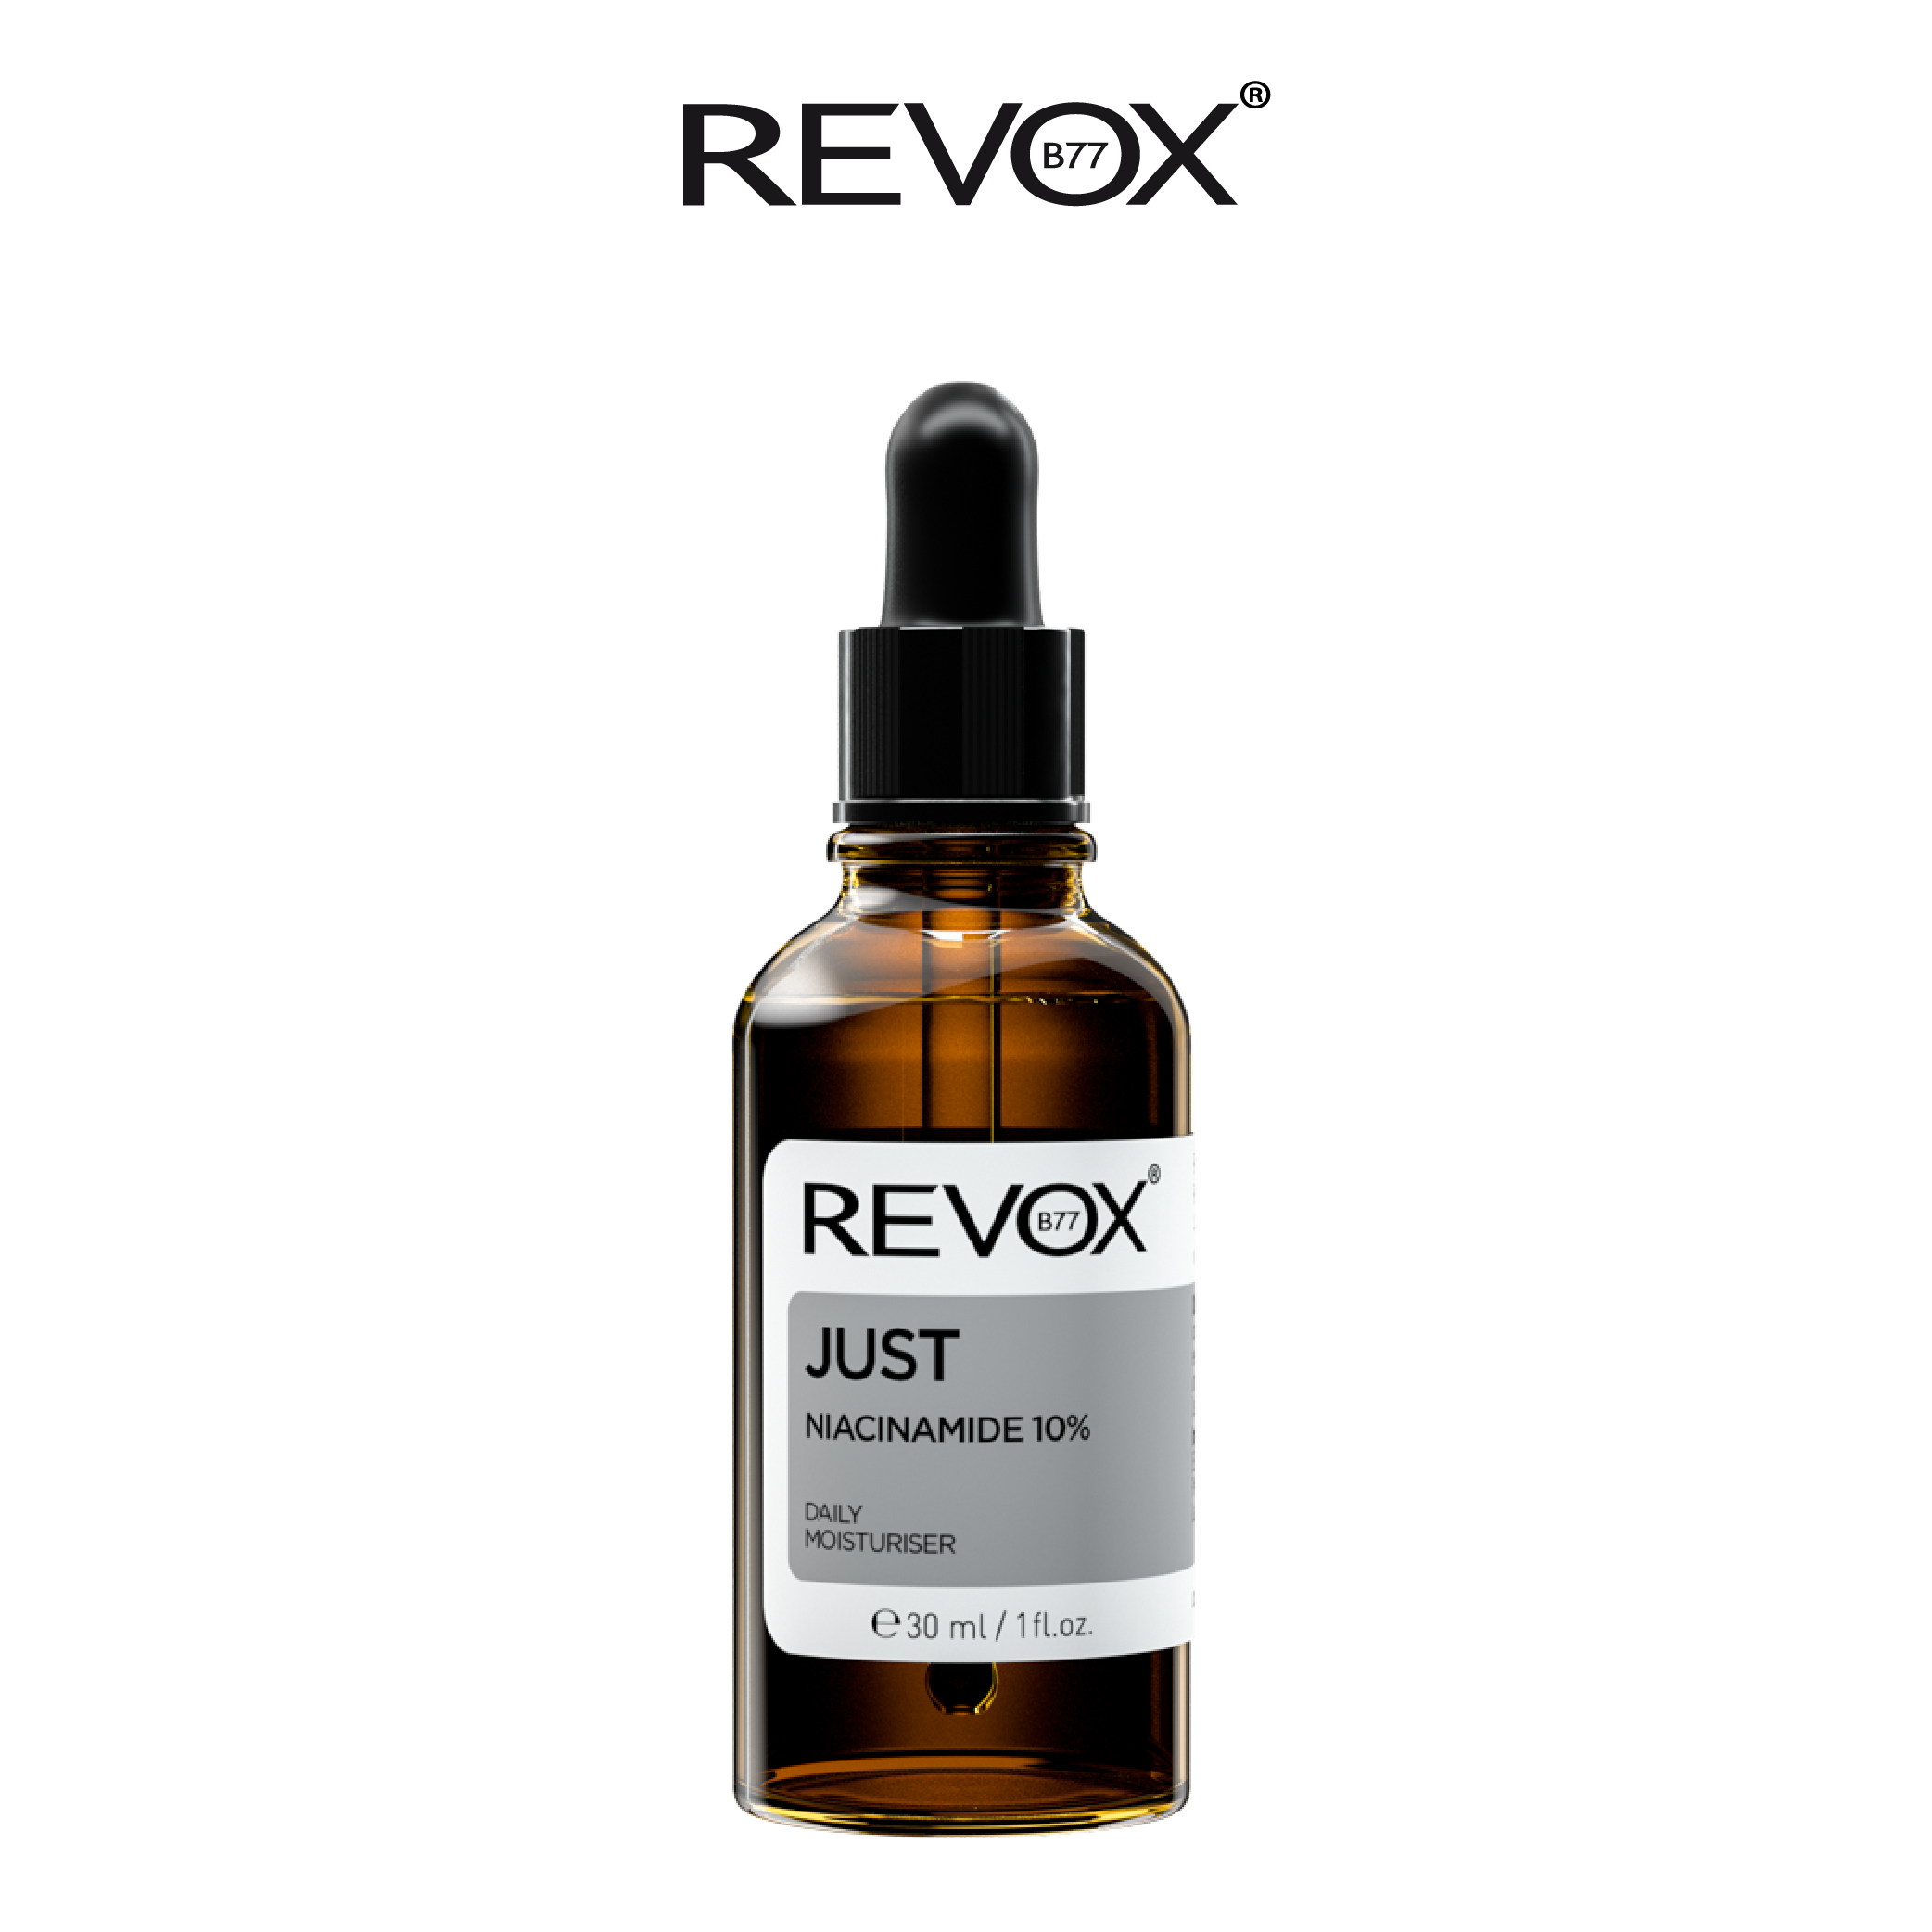 Tinh chất dưỡng ẩm hàng ngày cho da mặt và cổ Revox B77 Just - Niacinamide 10%